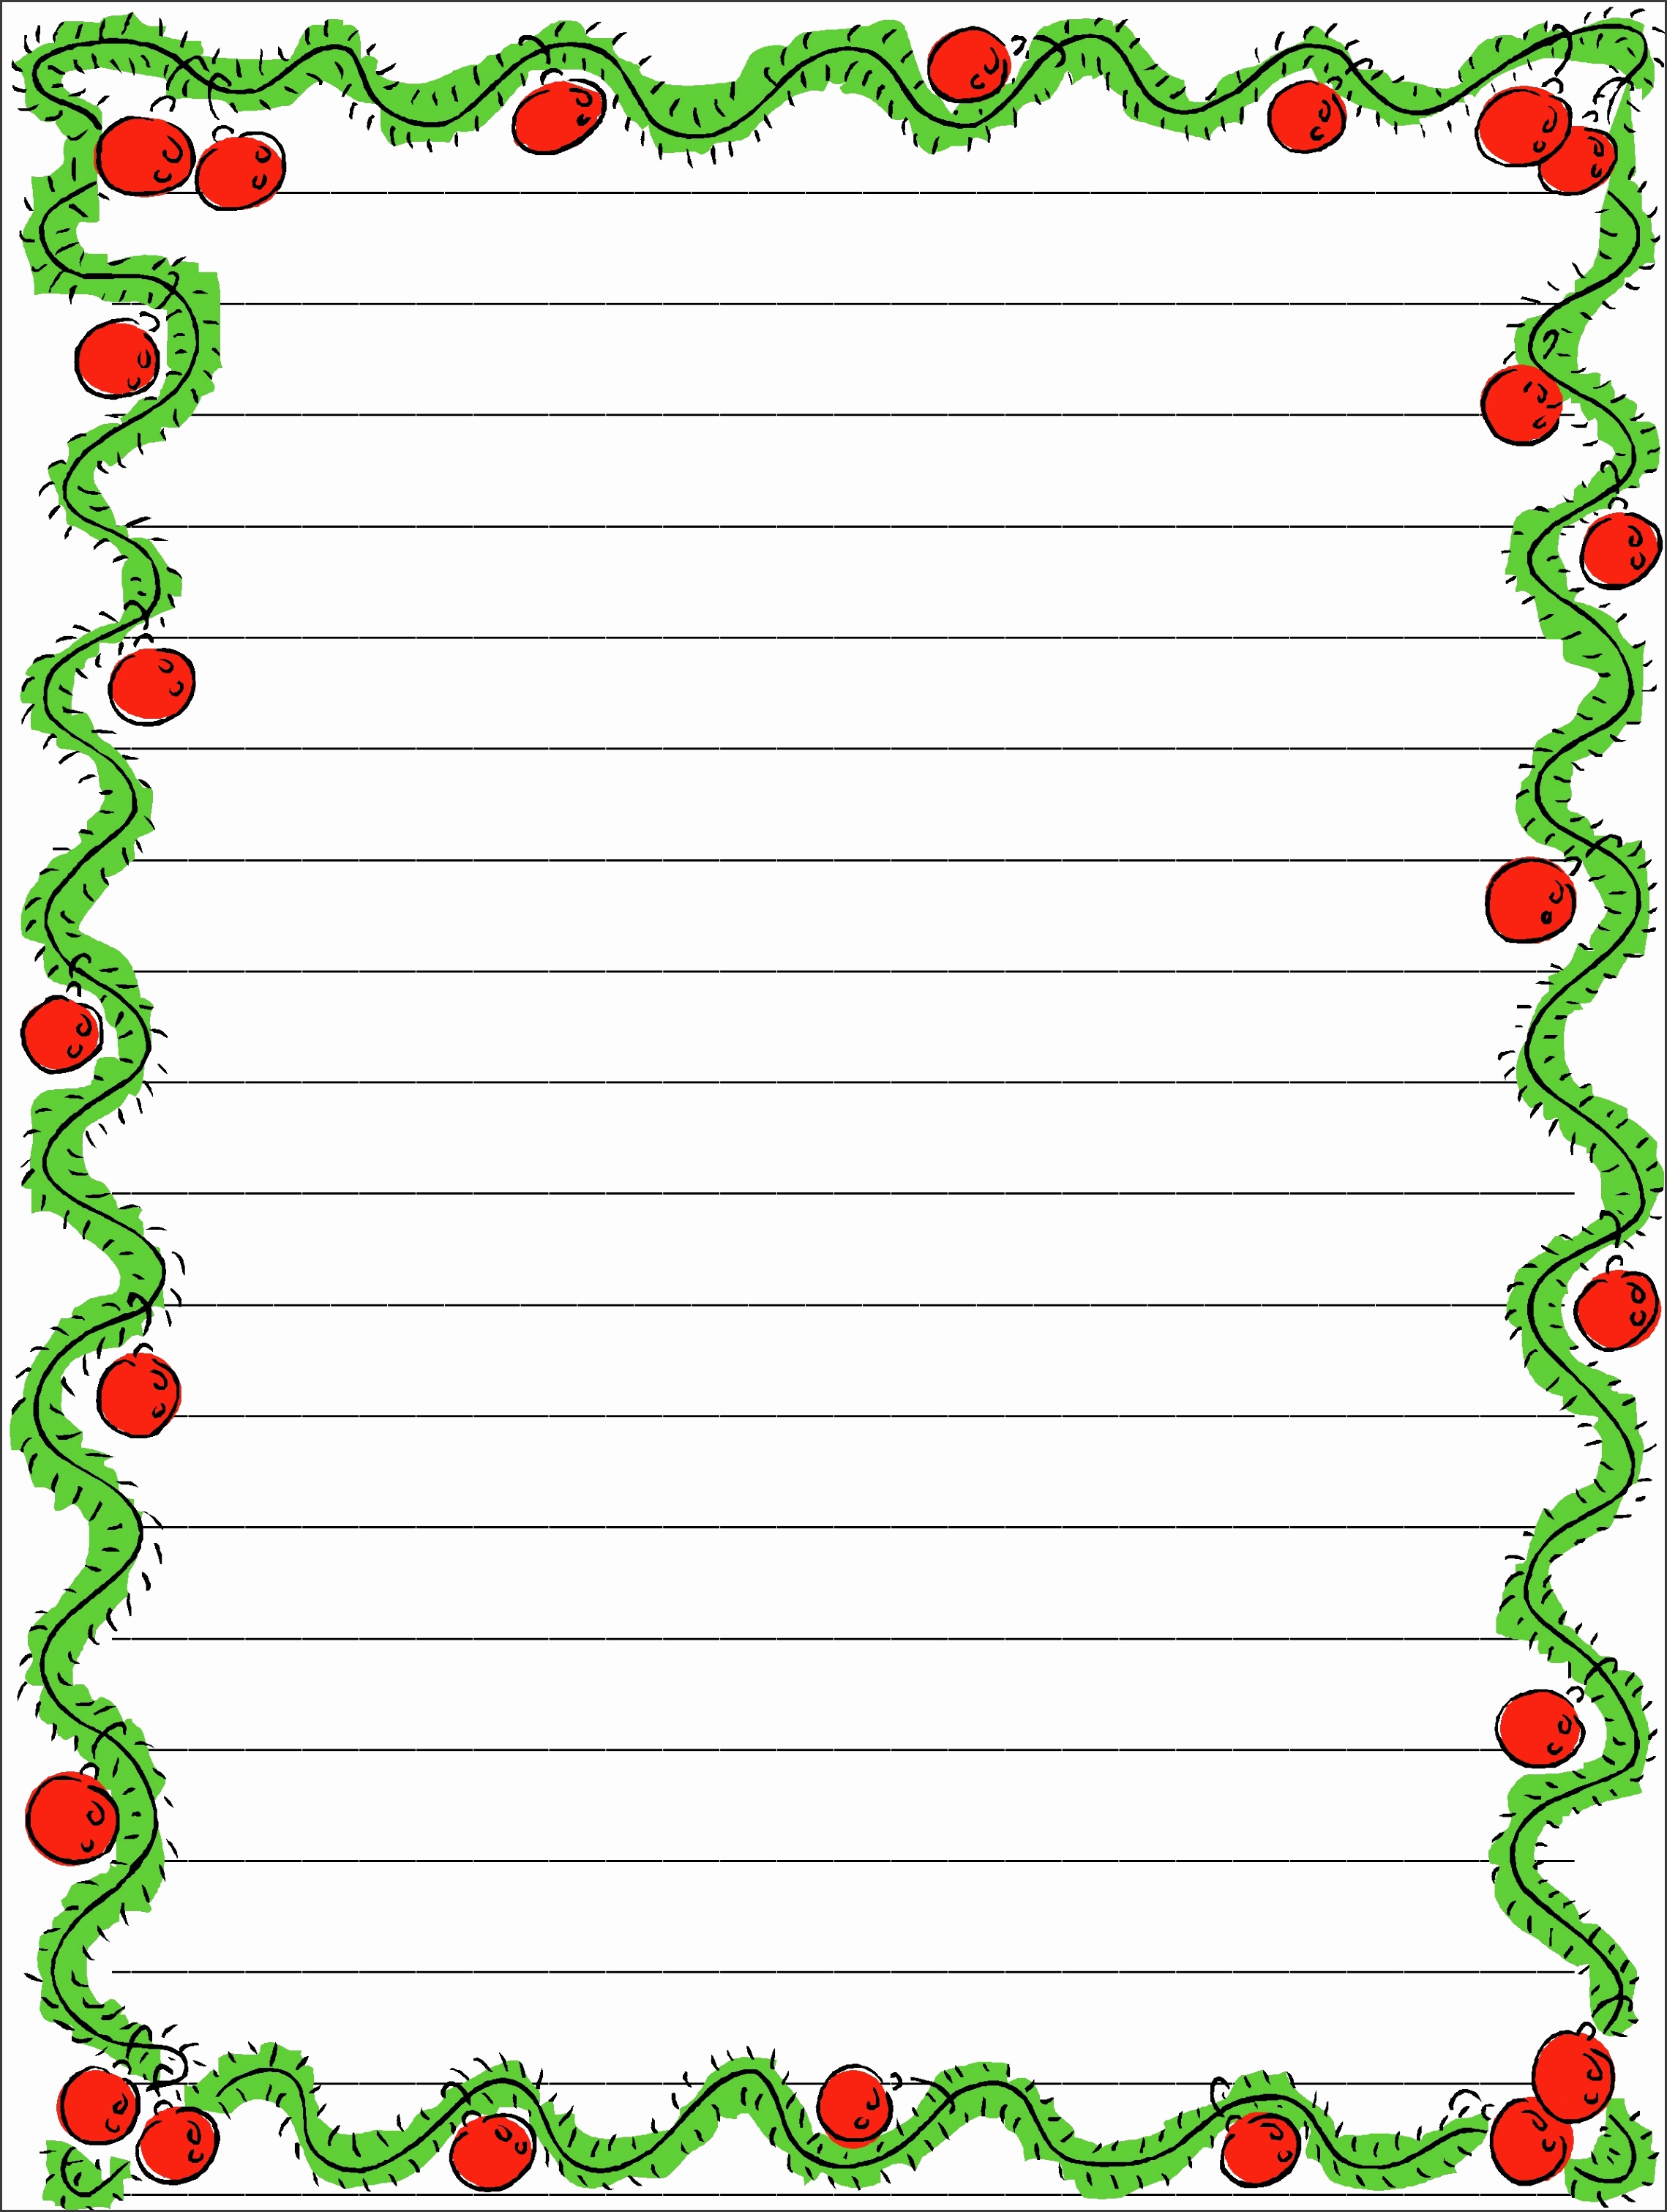 Christmas Writing Paper For Kids Free Printable Template Bank2home